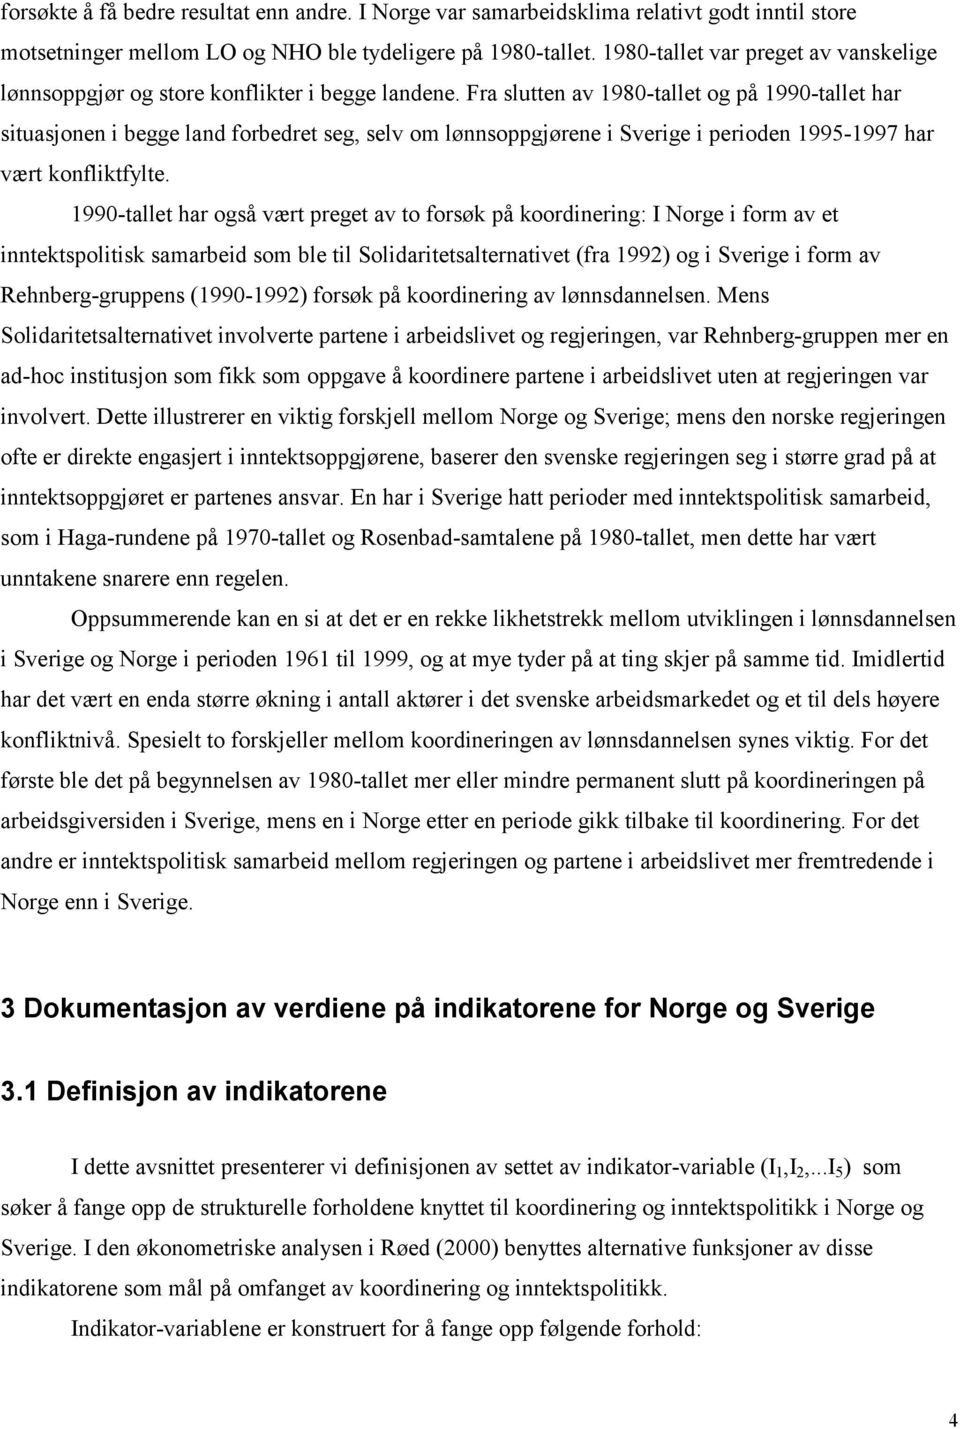 Fra slutten av 1980-tallet og på 1990-tallet har situasjonen i begge land forbedret seg, selv om lønnsoppgjørene i Sverige i perioden 1995-1997 har vært konfliktfylte.